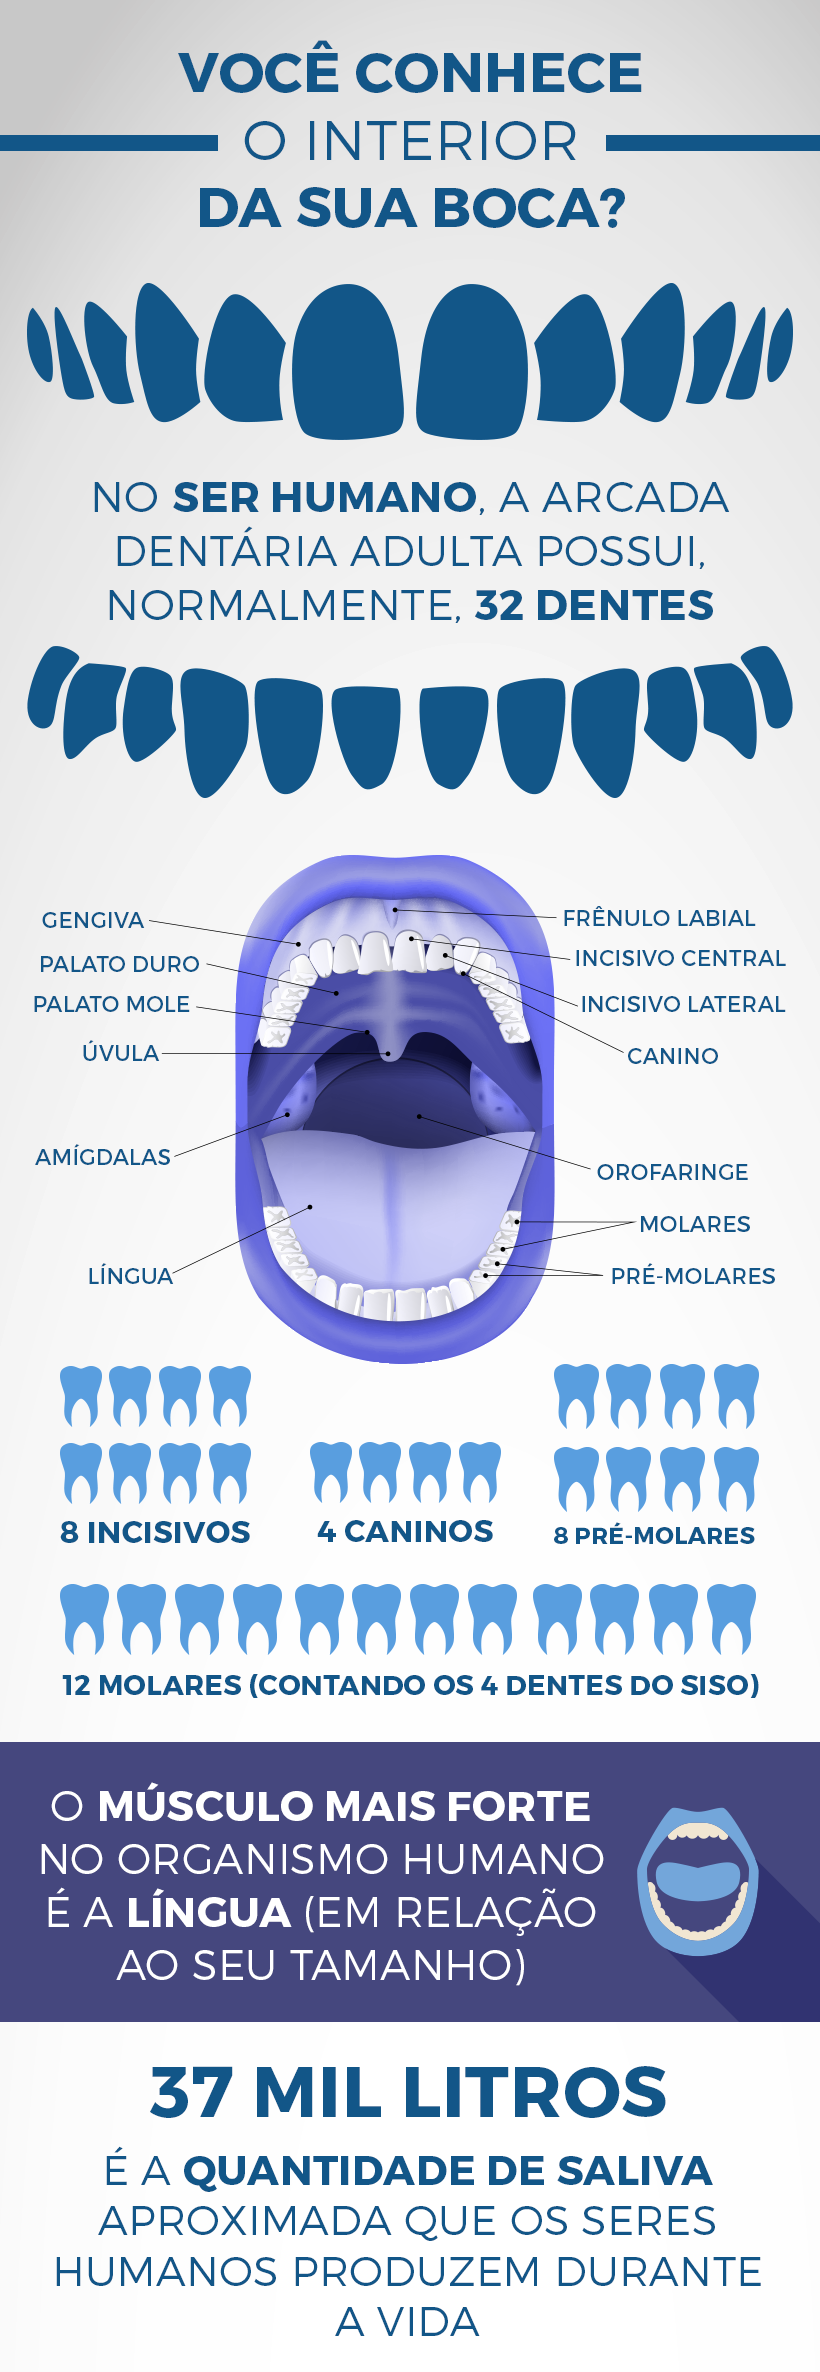 Conheça mais sobre a anatomia da sua boca